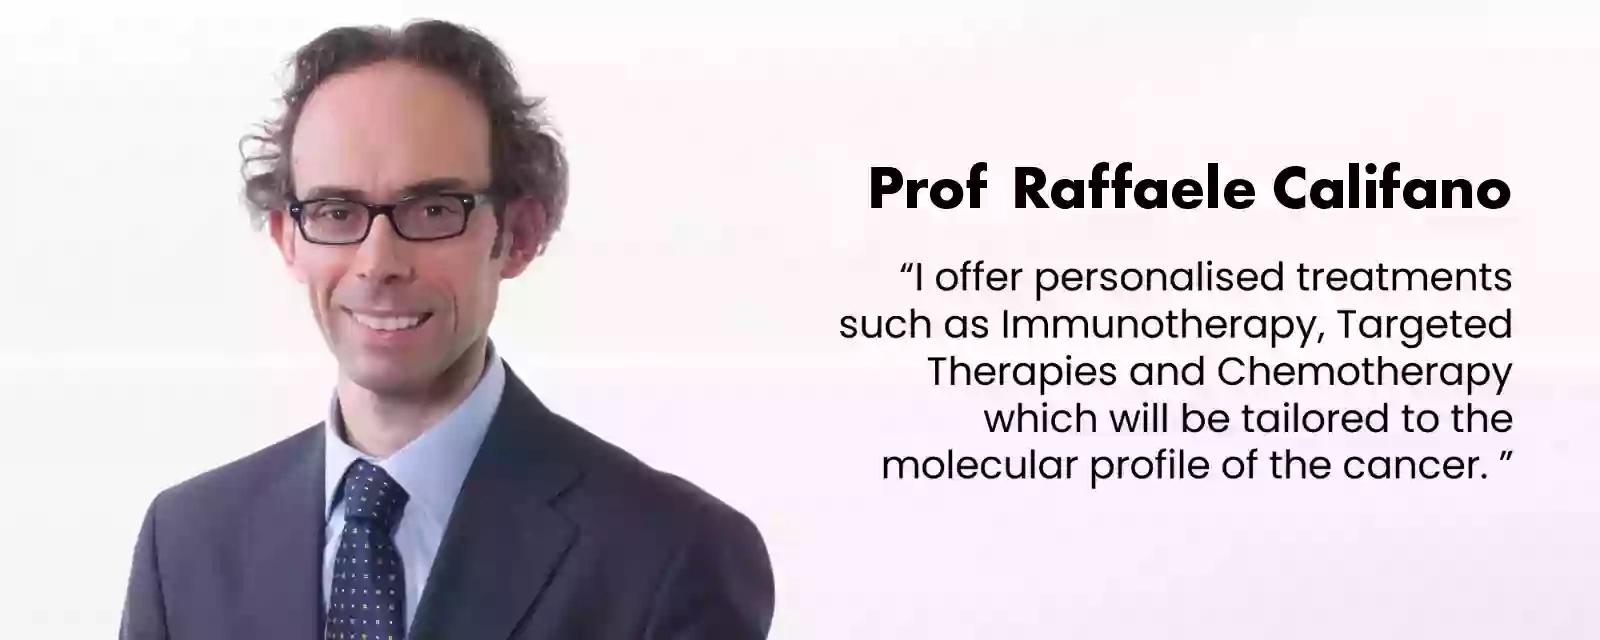 Professor Raffaele Califano - Consultant Medical Oncologist